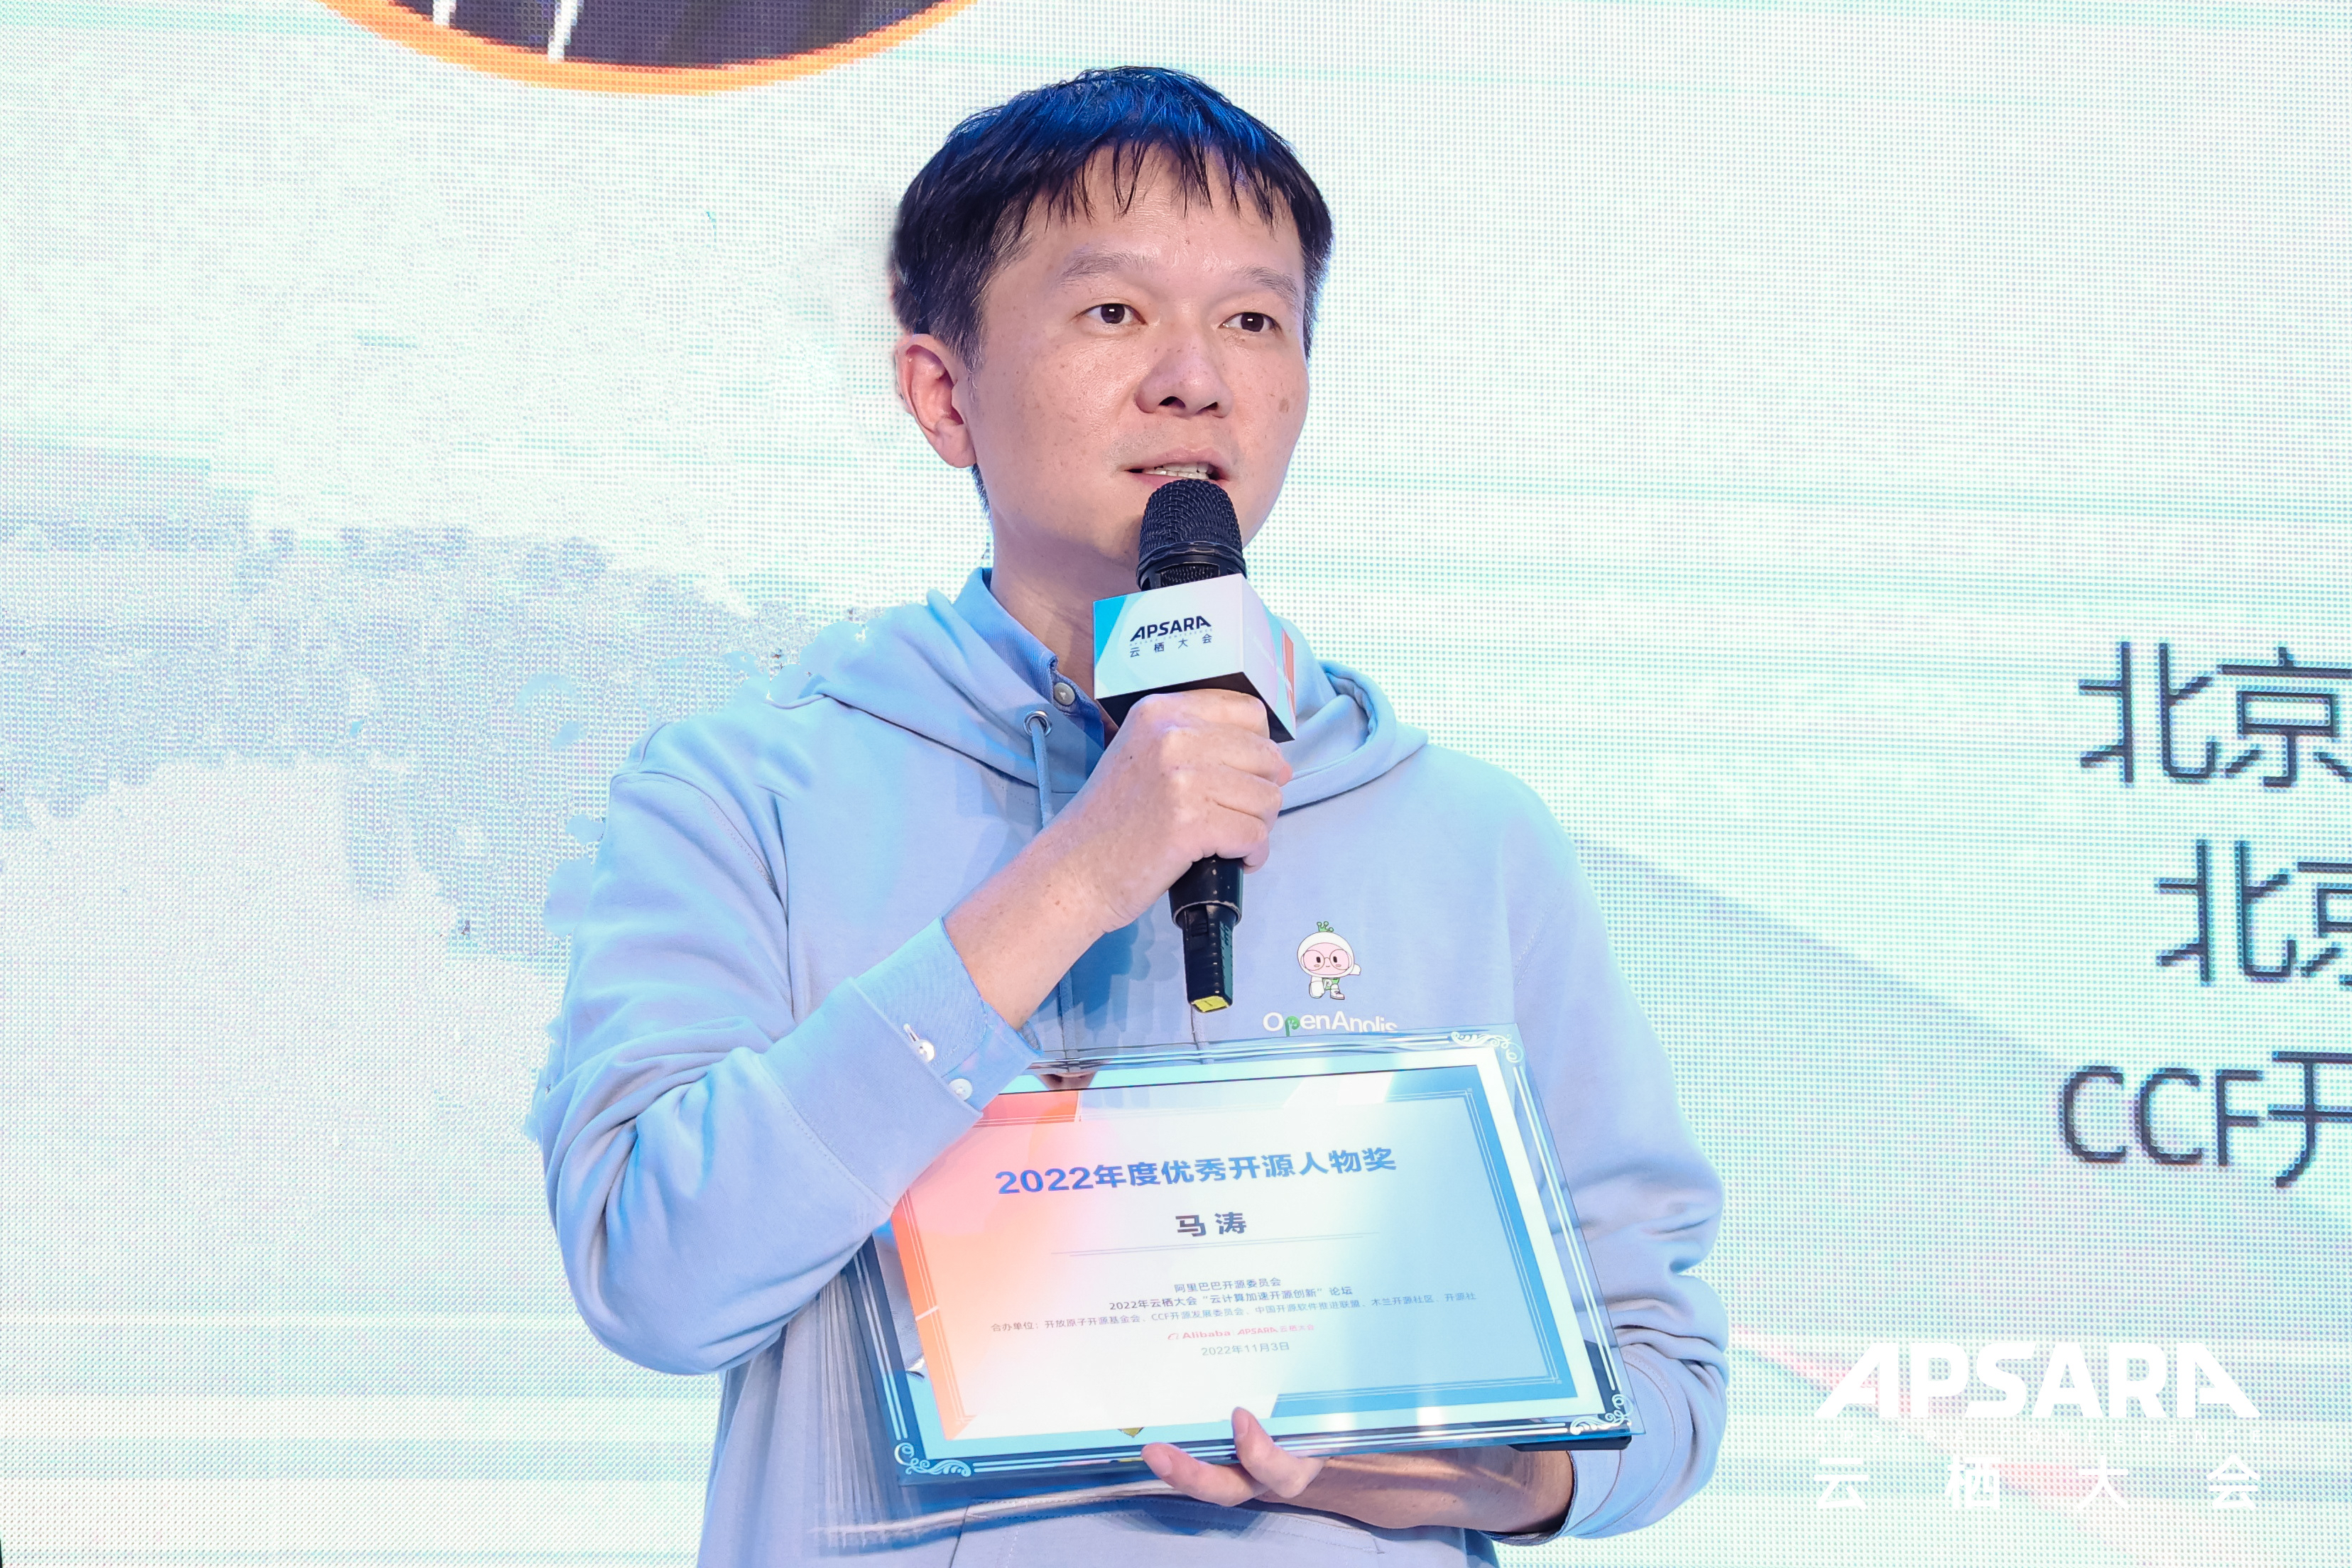 龙蜥理事长马涛荣获 “2022 年度开源人物”-开源基础软件社区